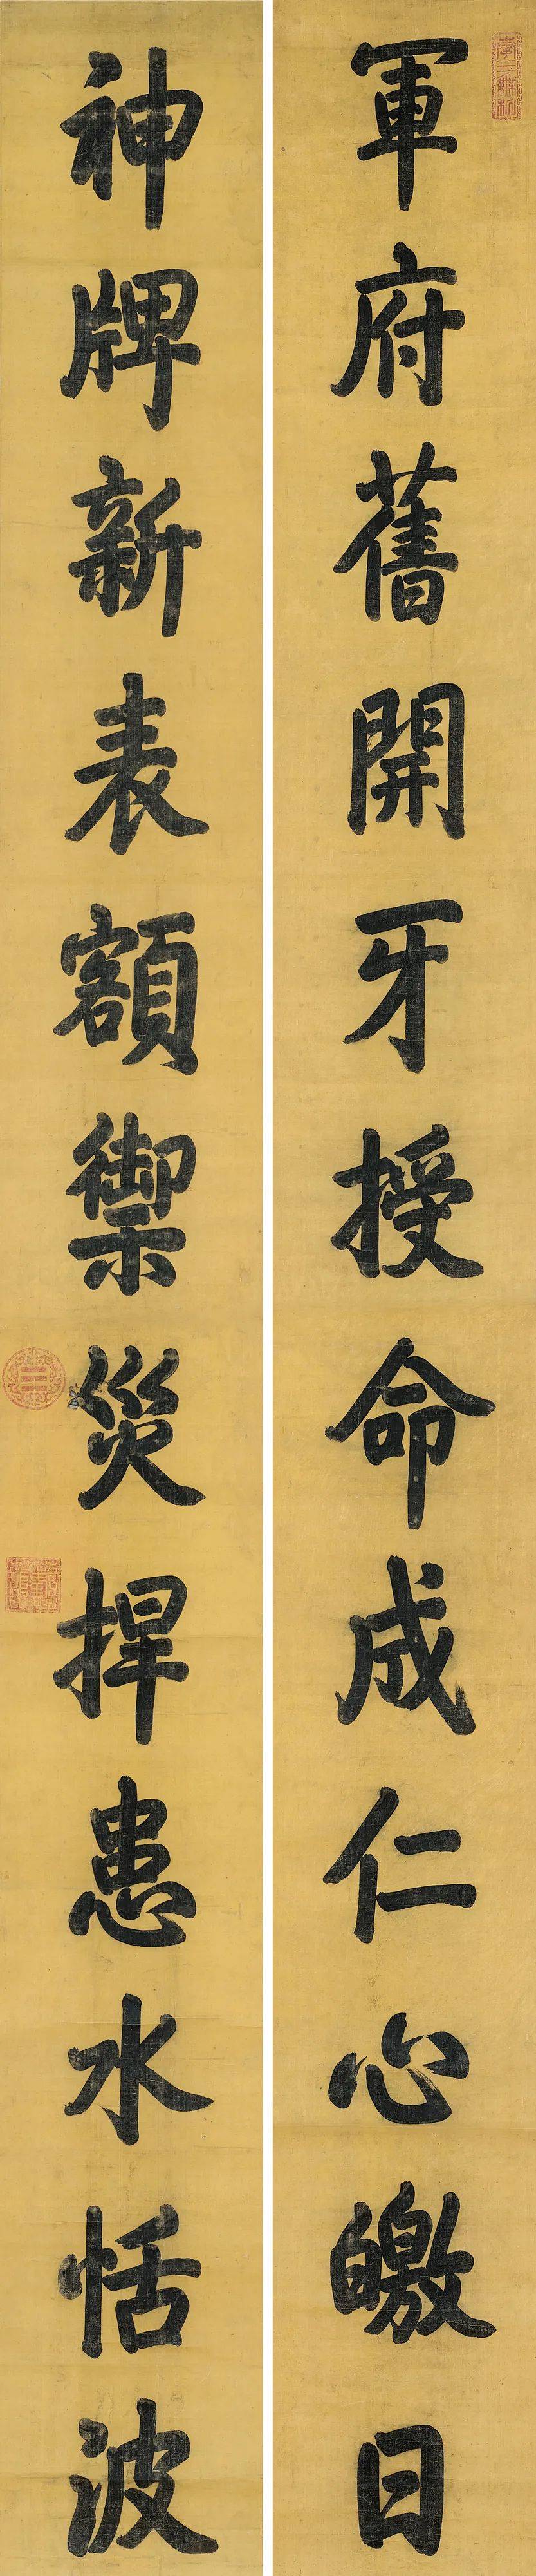 徐悲鸿的《芭蕉竹石》,于右任的《草书五言联》及章士钊的《书法